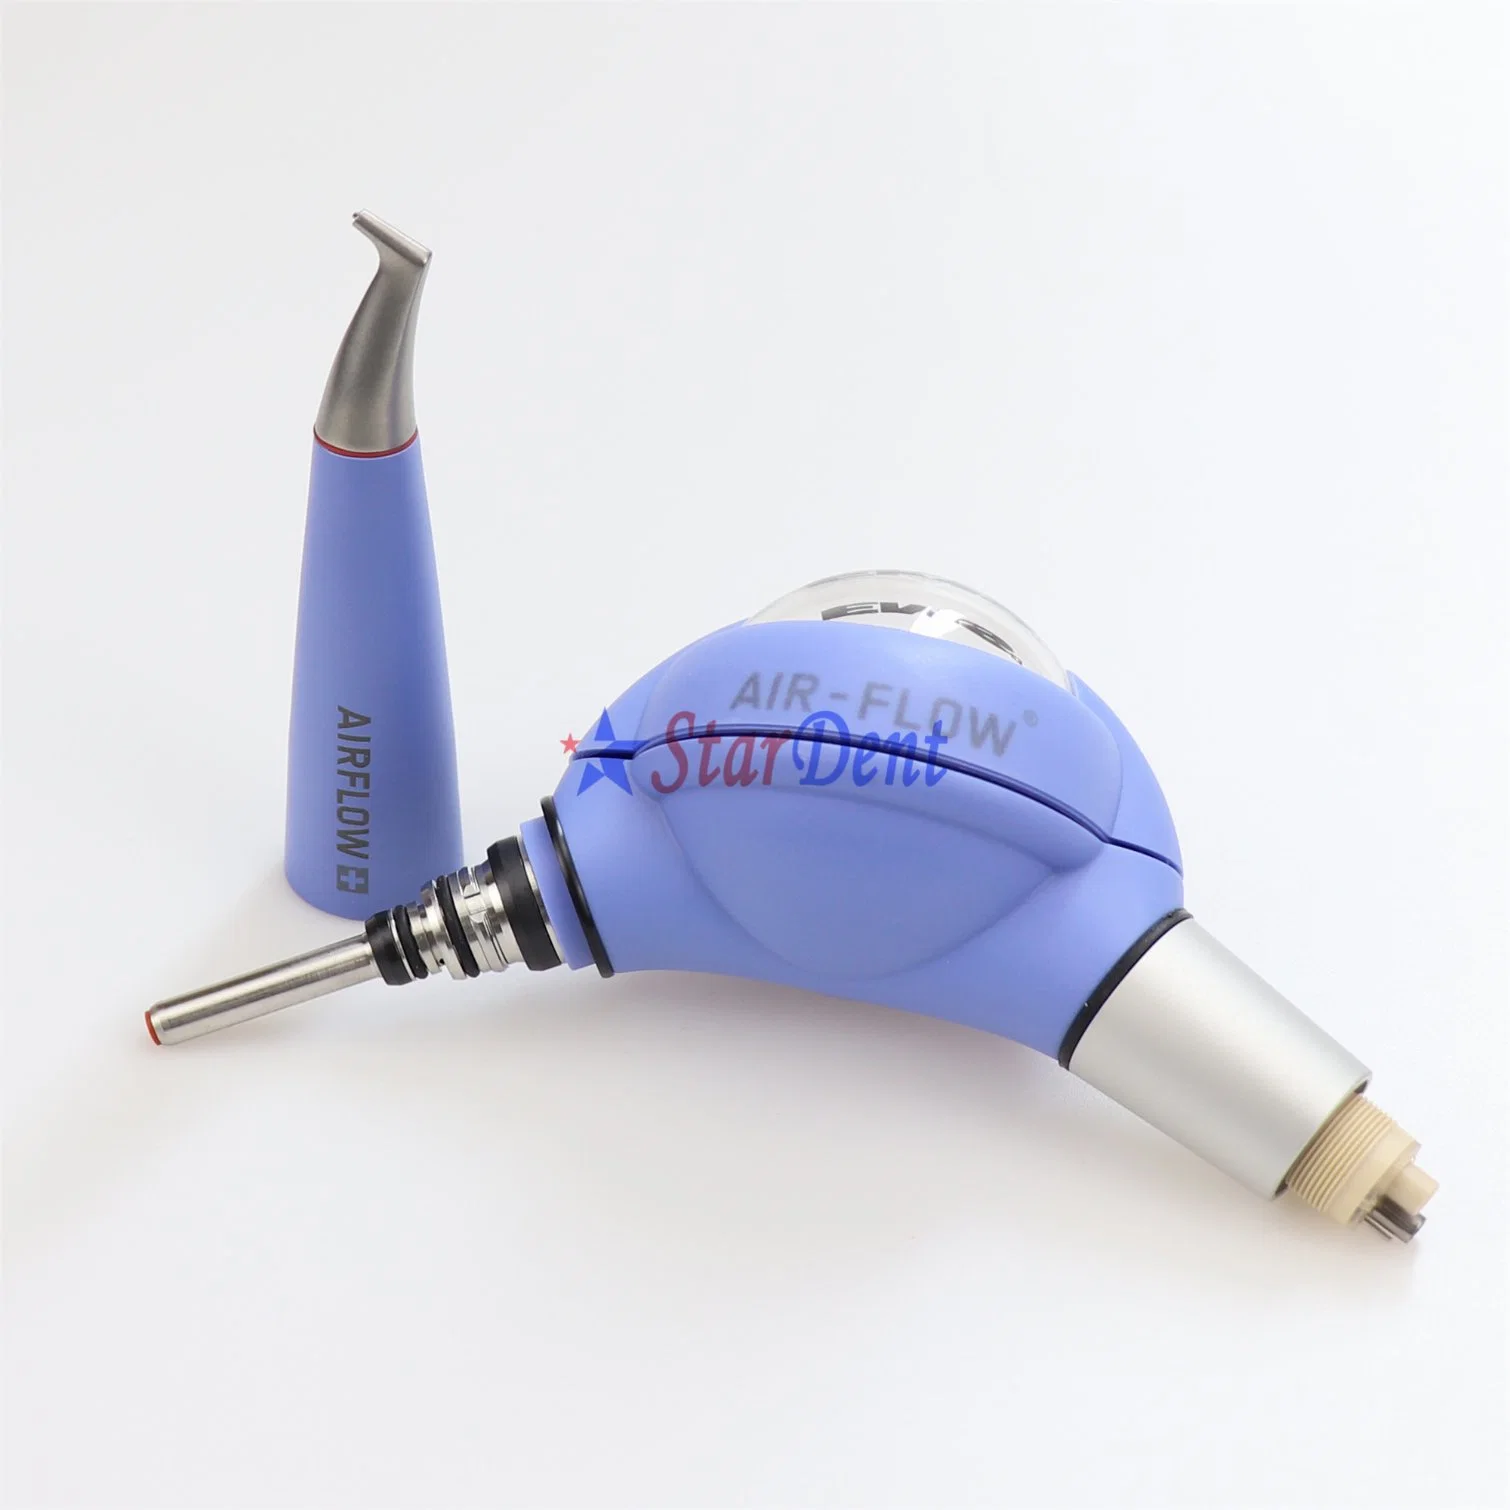 EMS Air-Flow Original Dental práctico aplicador 2+ El equipo del sistema de pulido de aire de la higiene oral de la turbina